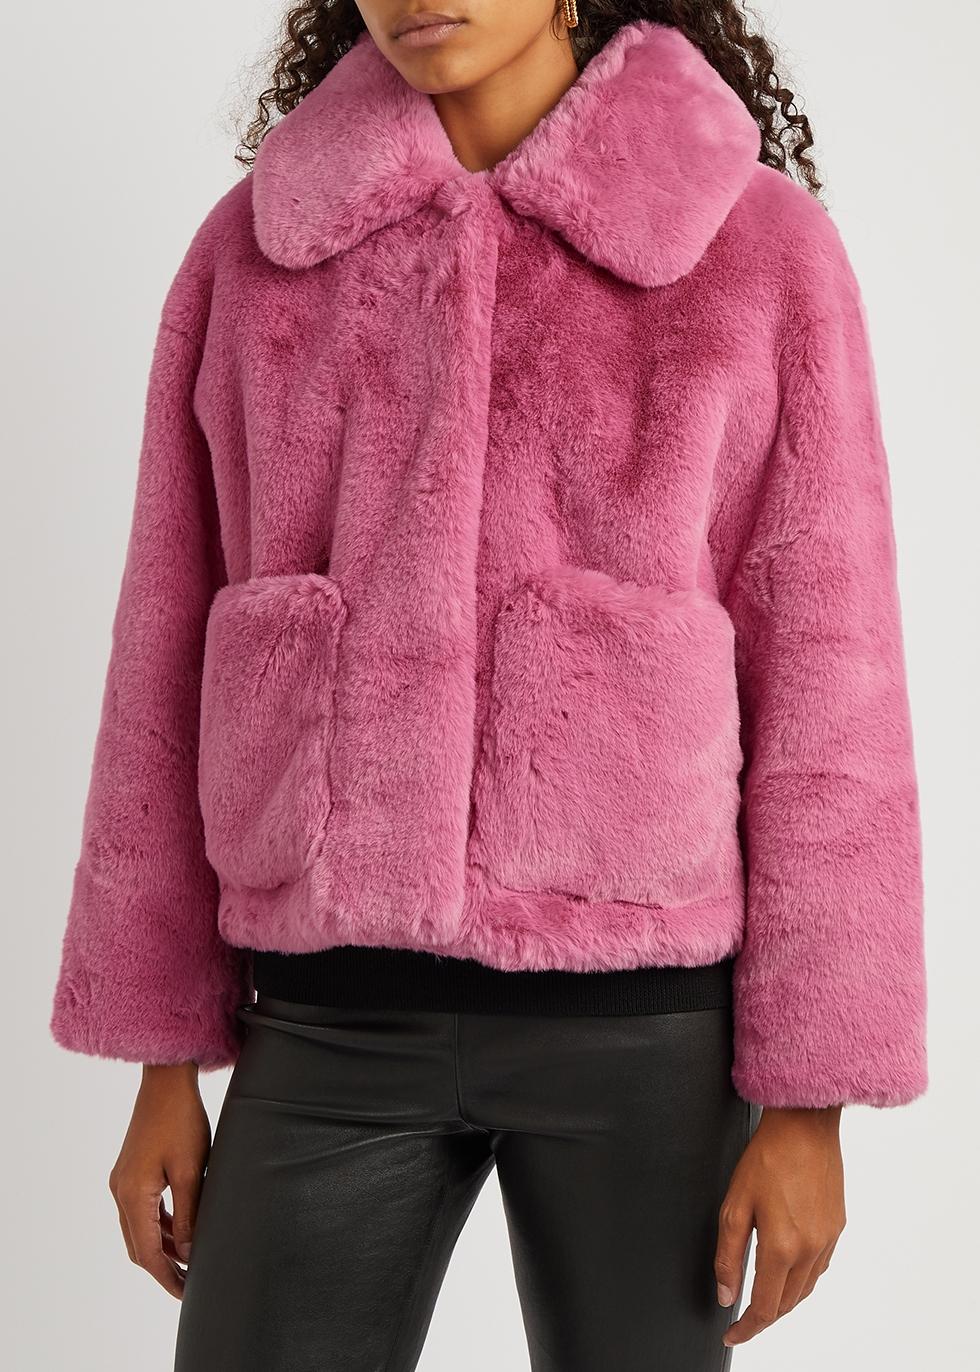 Jakke Women's Traci Pink Faux Fur Coat